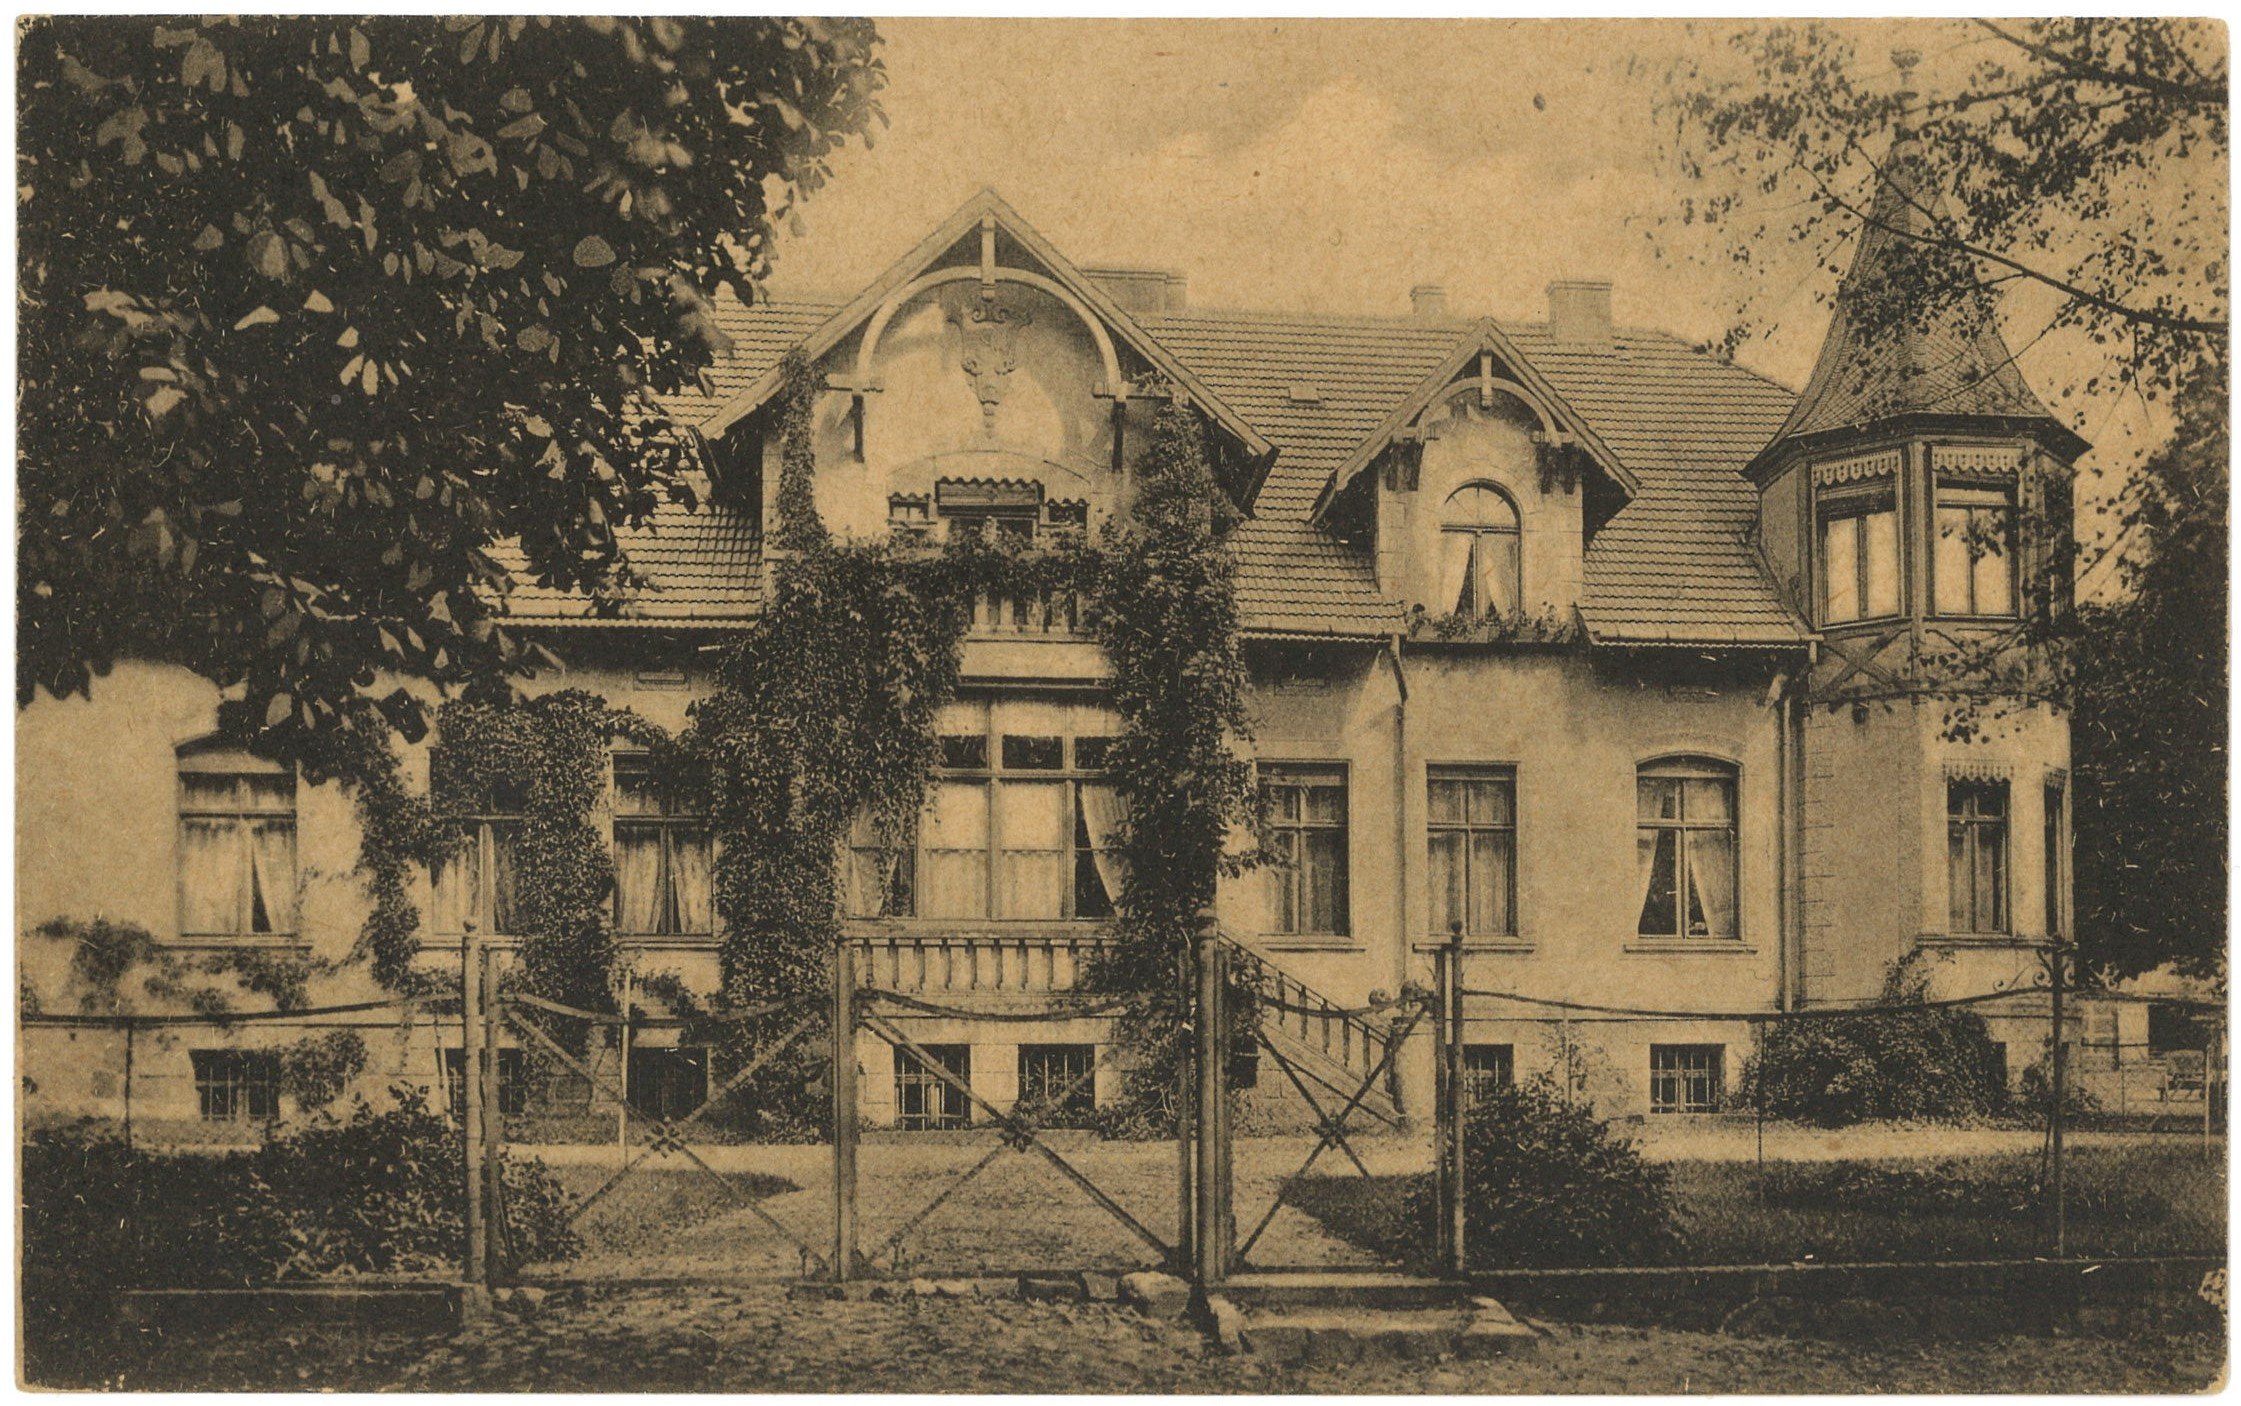 Klausdorf (Kr. Soldin) [Płonno]: Herrenhaus (Landesgeschichtliche Vereinigung für die Mark Brandenburg e.V., Archiv CC BY)